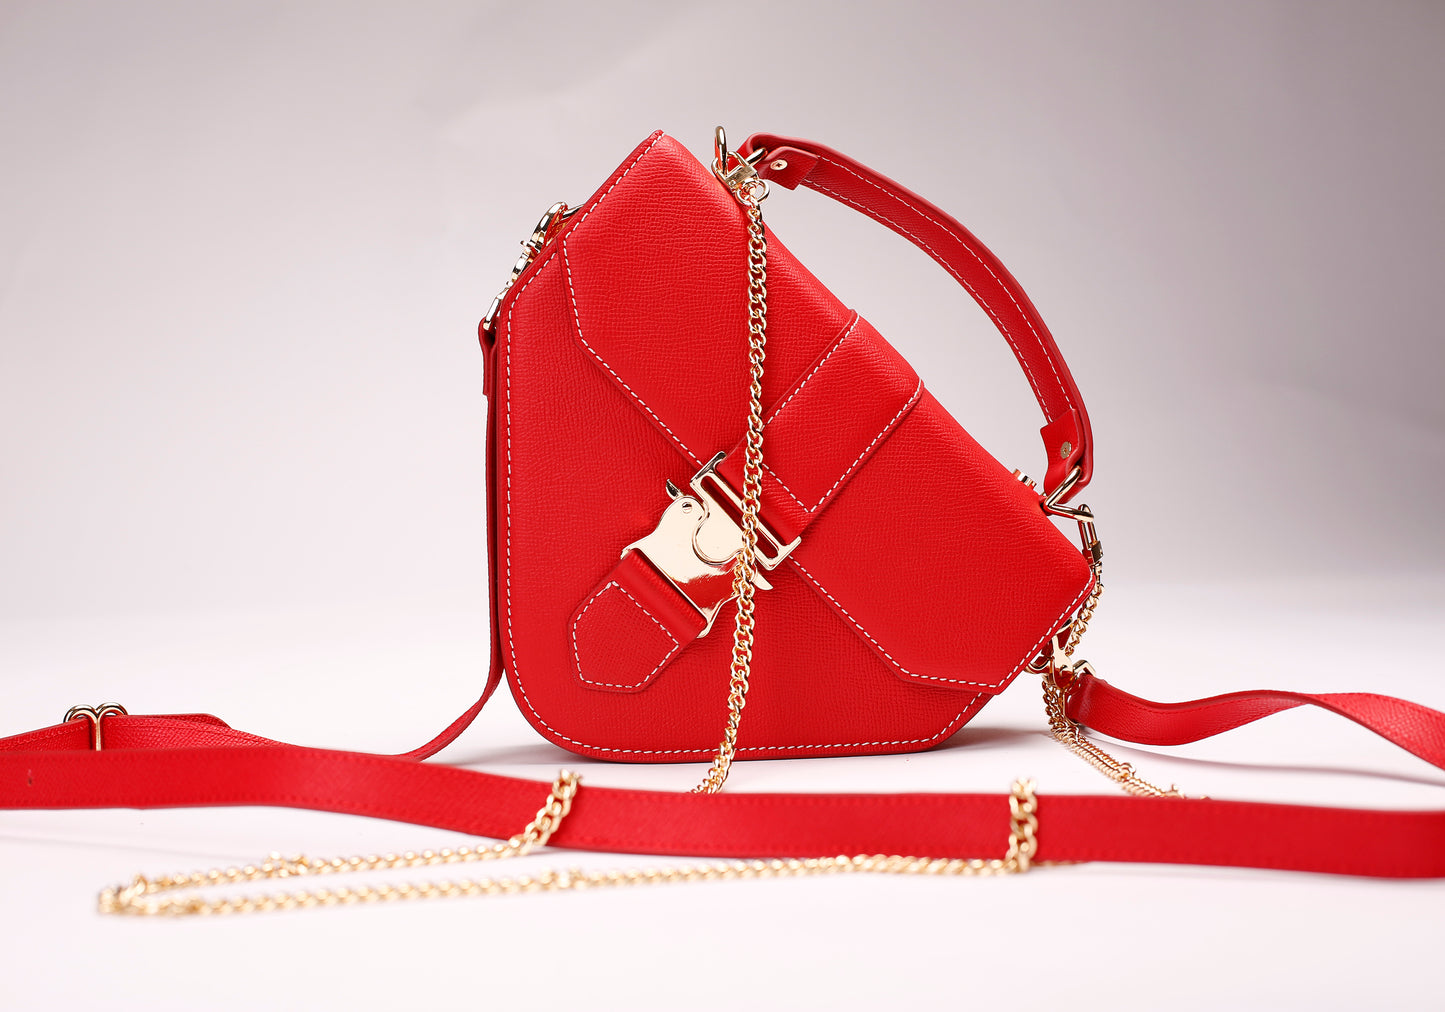 The Regatta Handbag (Red)